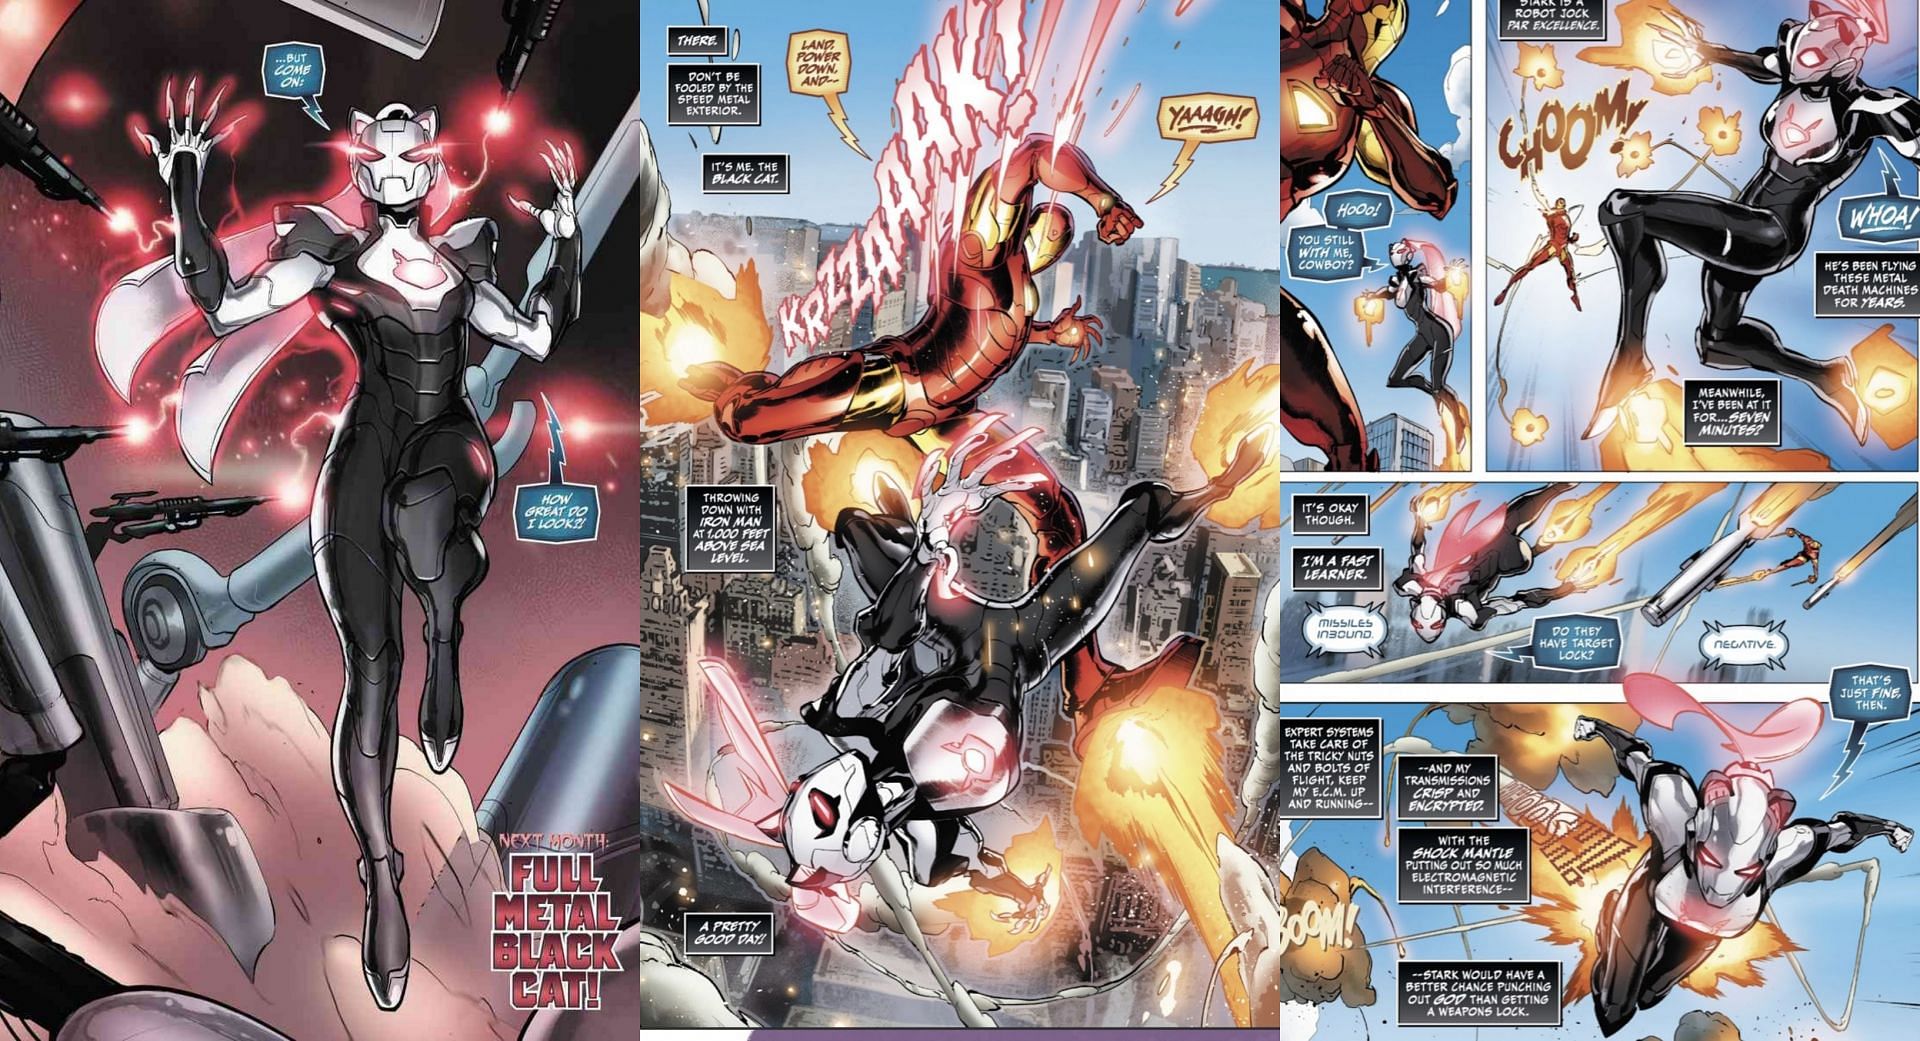 Iron Man vs Black Cat in Black Cat issue #11/#12 (image via Marvel Comics)